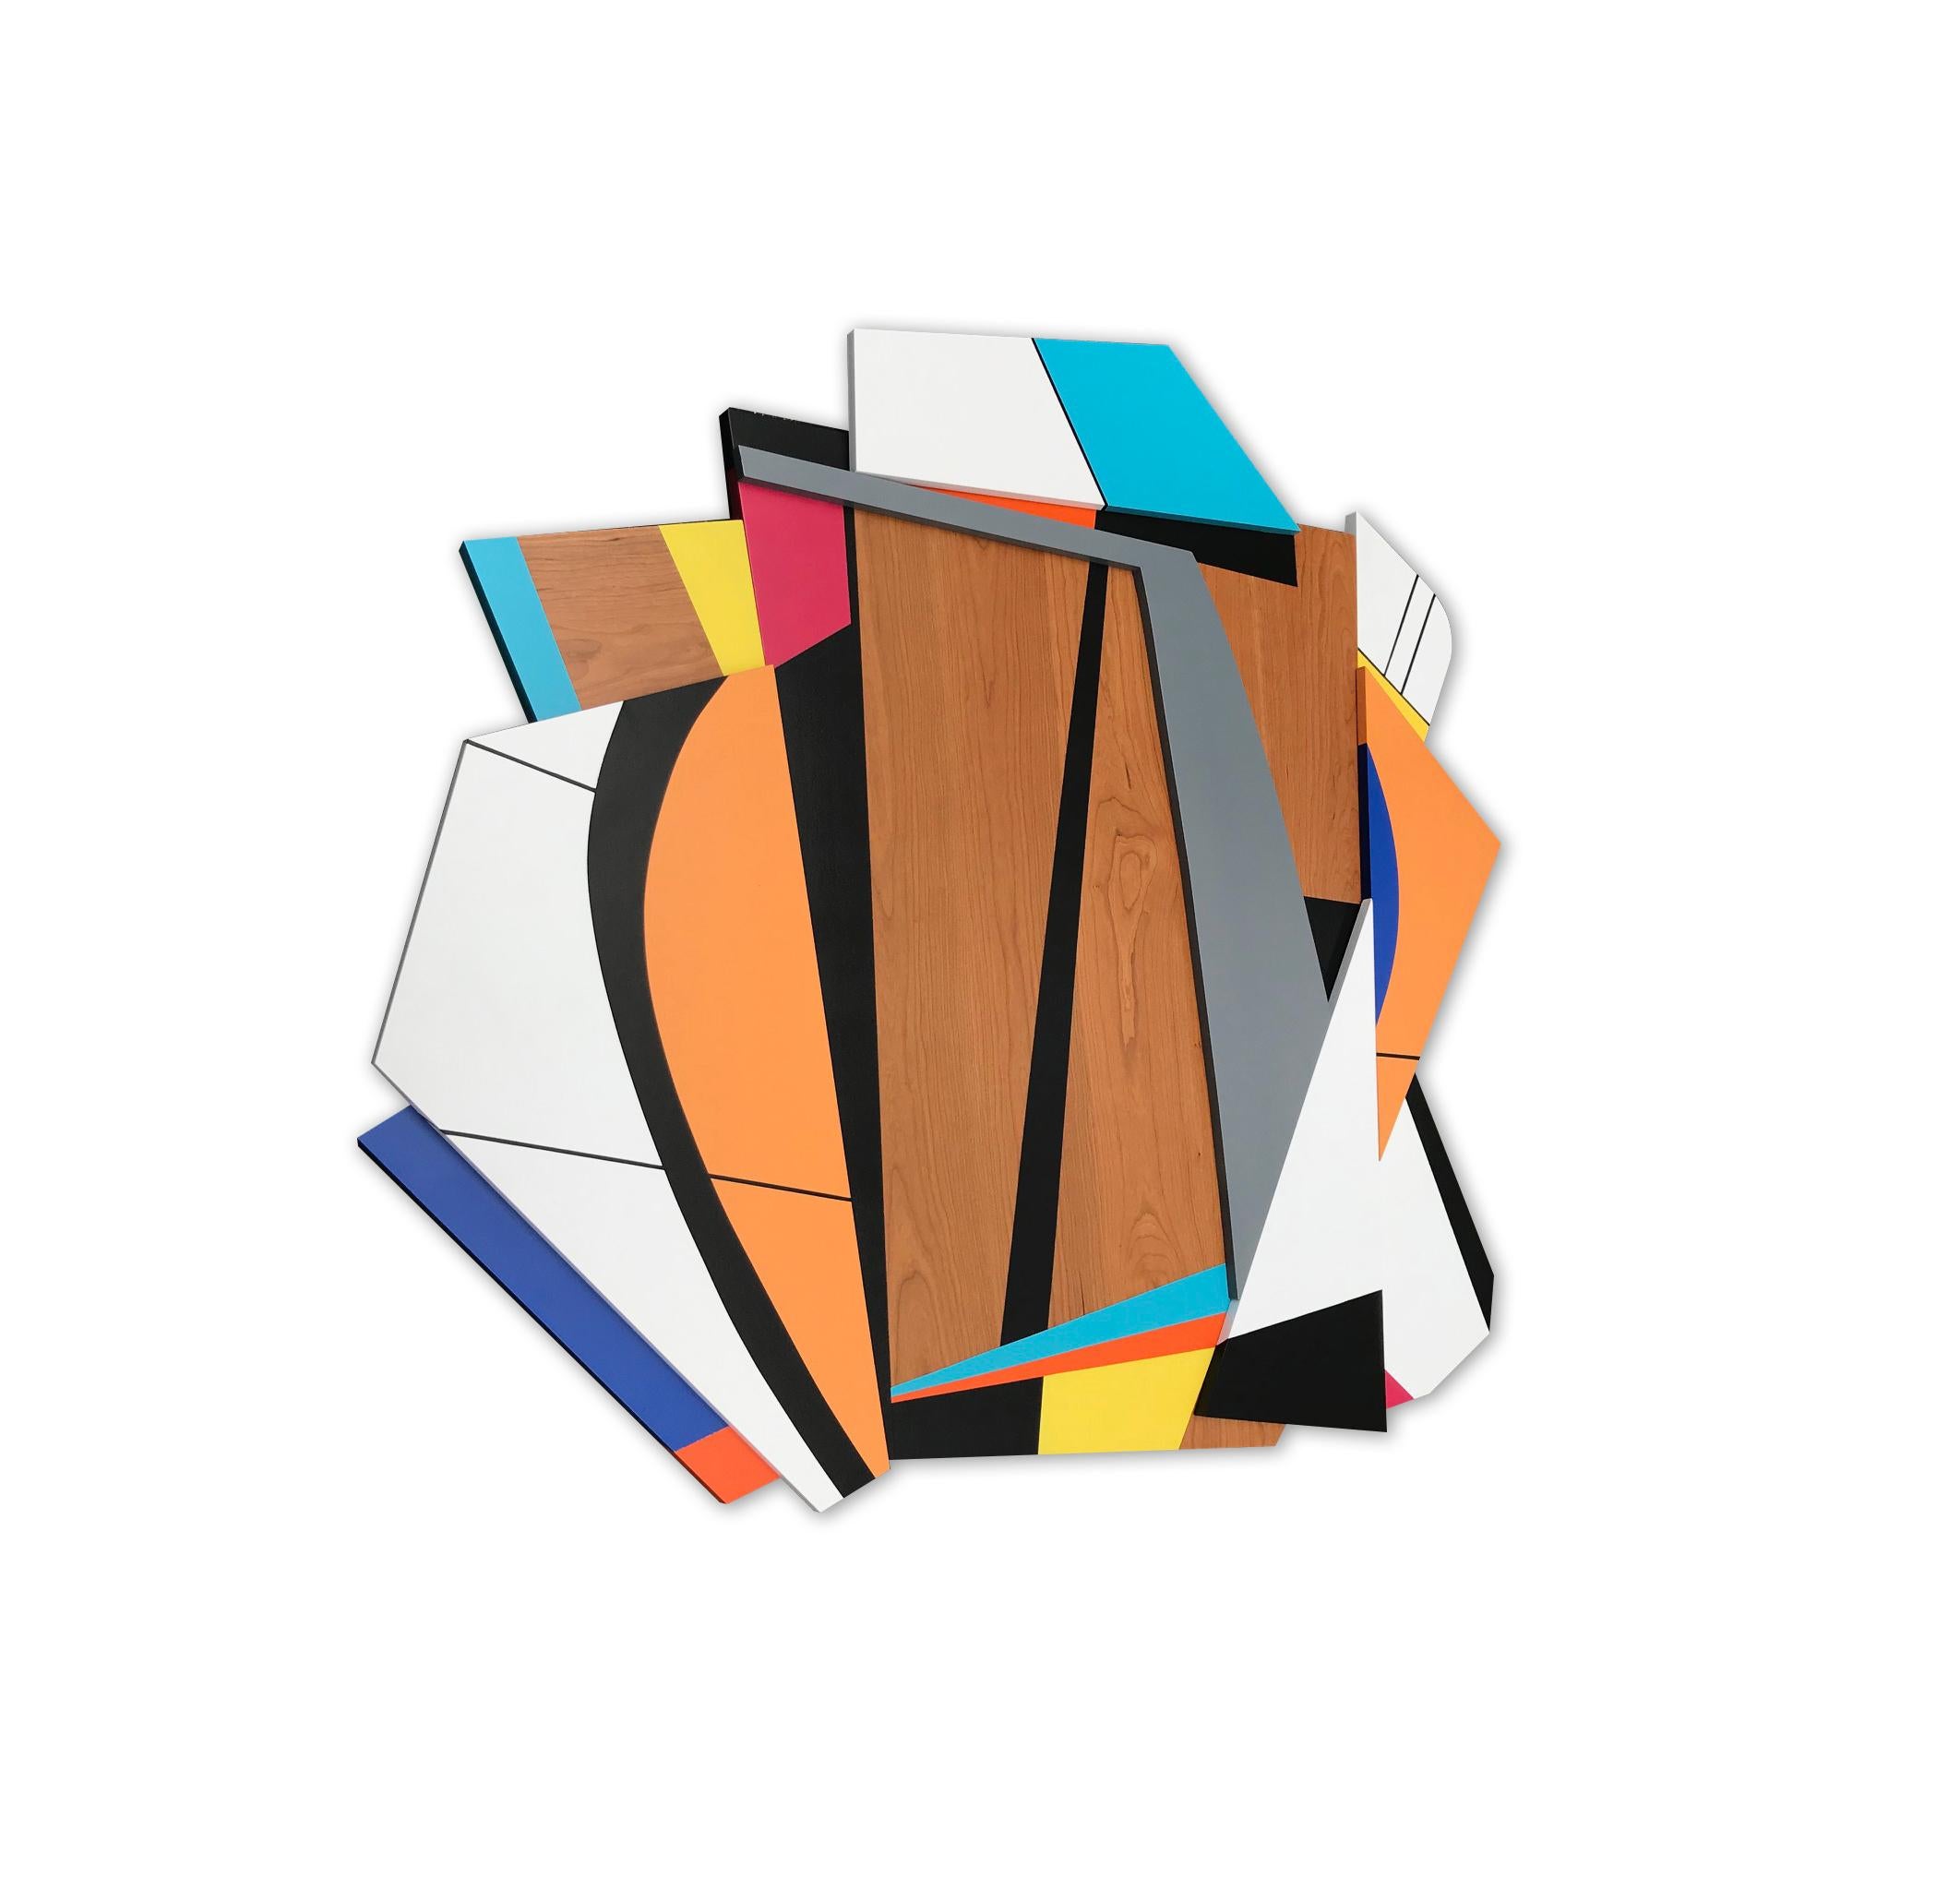 Quiet Riot V (modern abstract wall sculpture minimal geometric design wood art) - Modern Sculpture by Scott Troxel